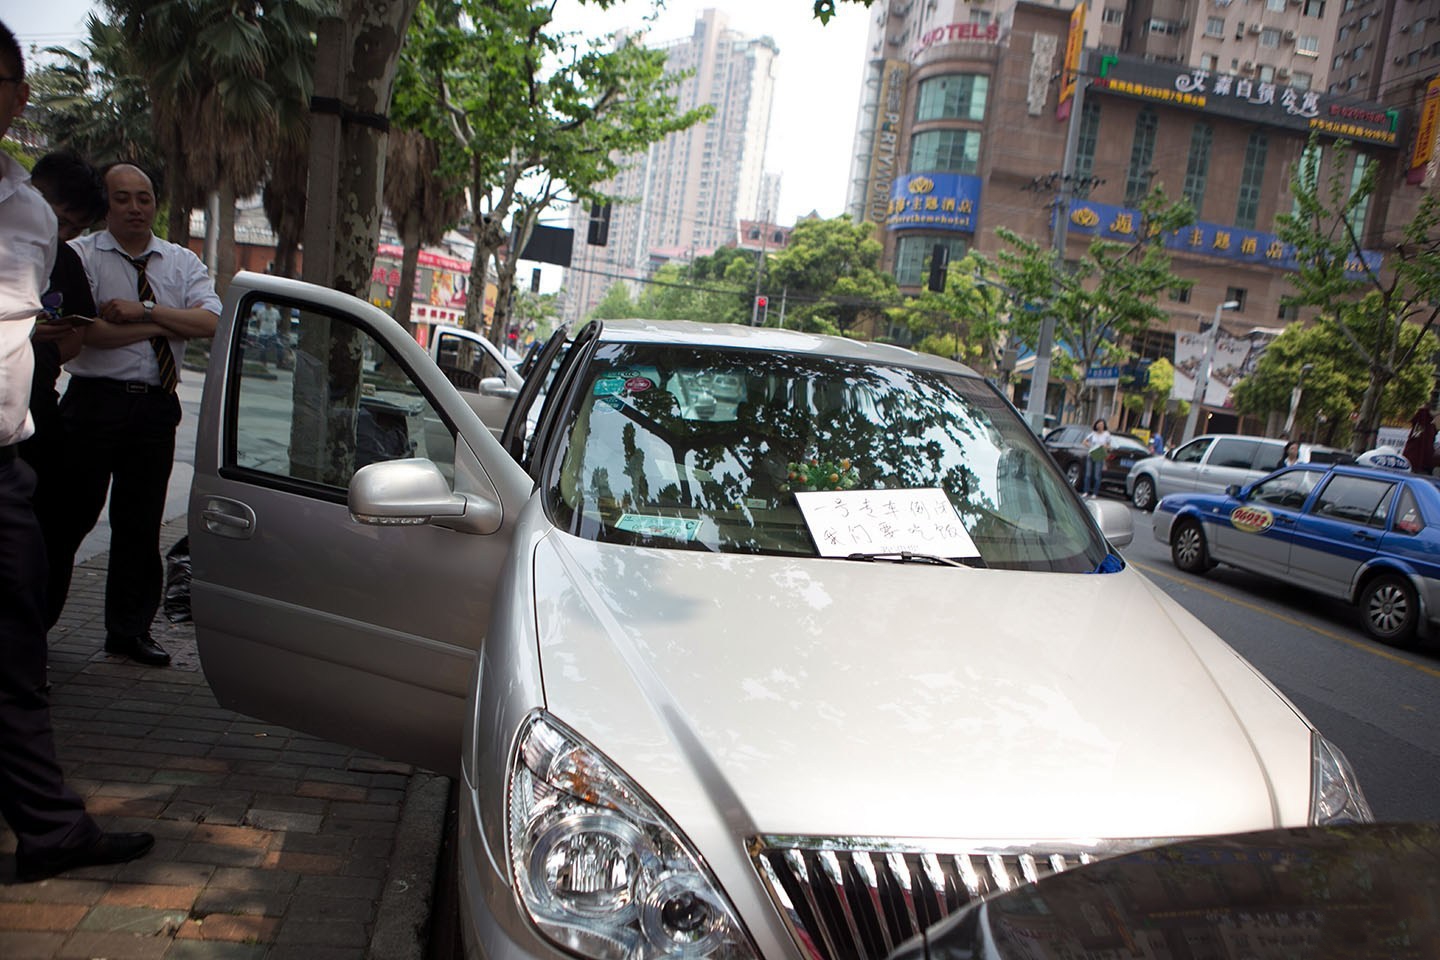 滴滴快的合并 上海专车司机围堵总部抗议待遇